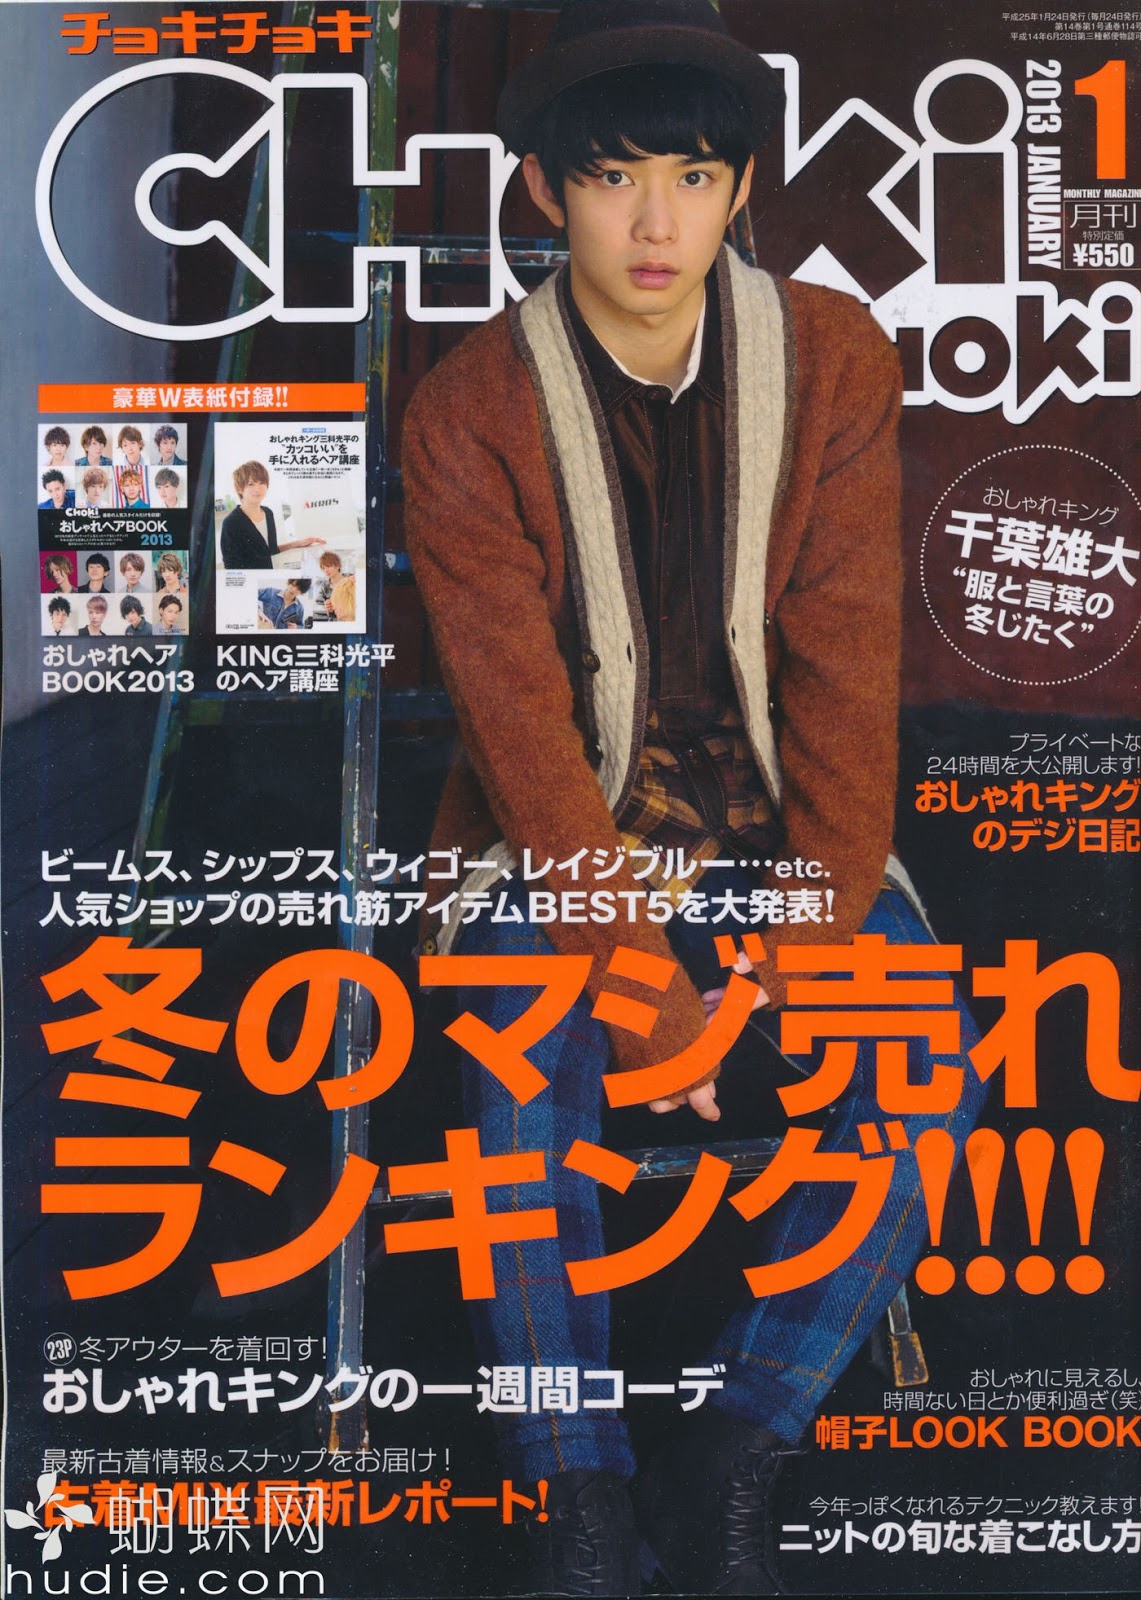 Jmagazine Scans Choki Choki チョキチョキ January 13